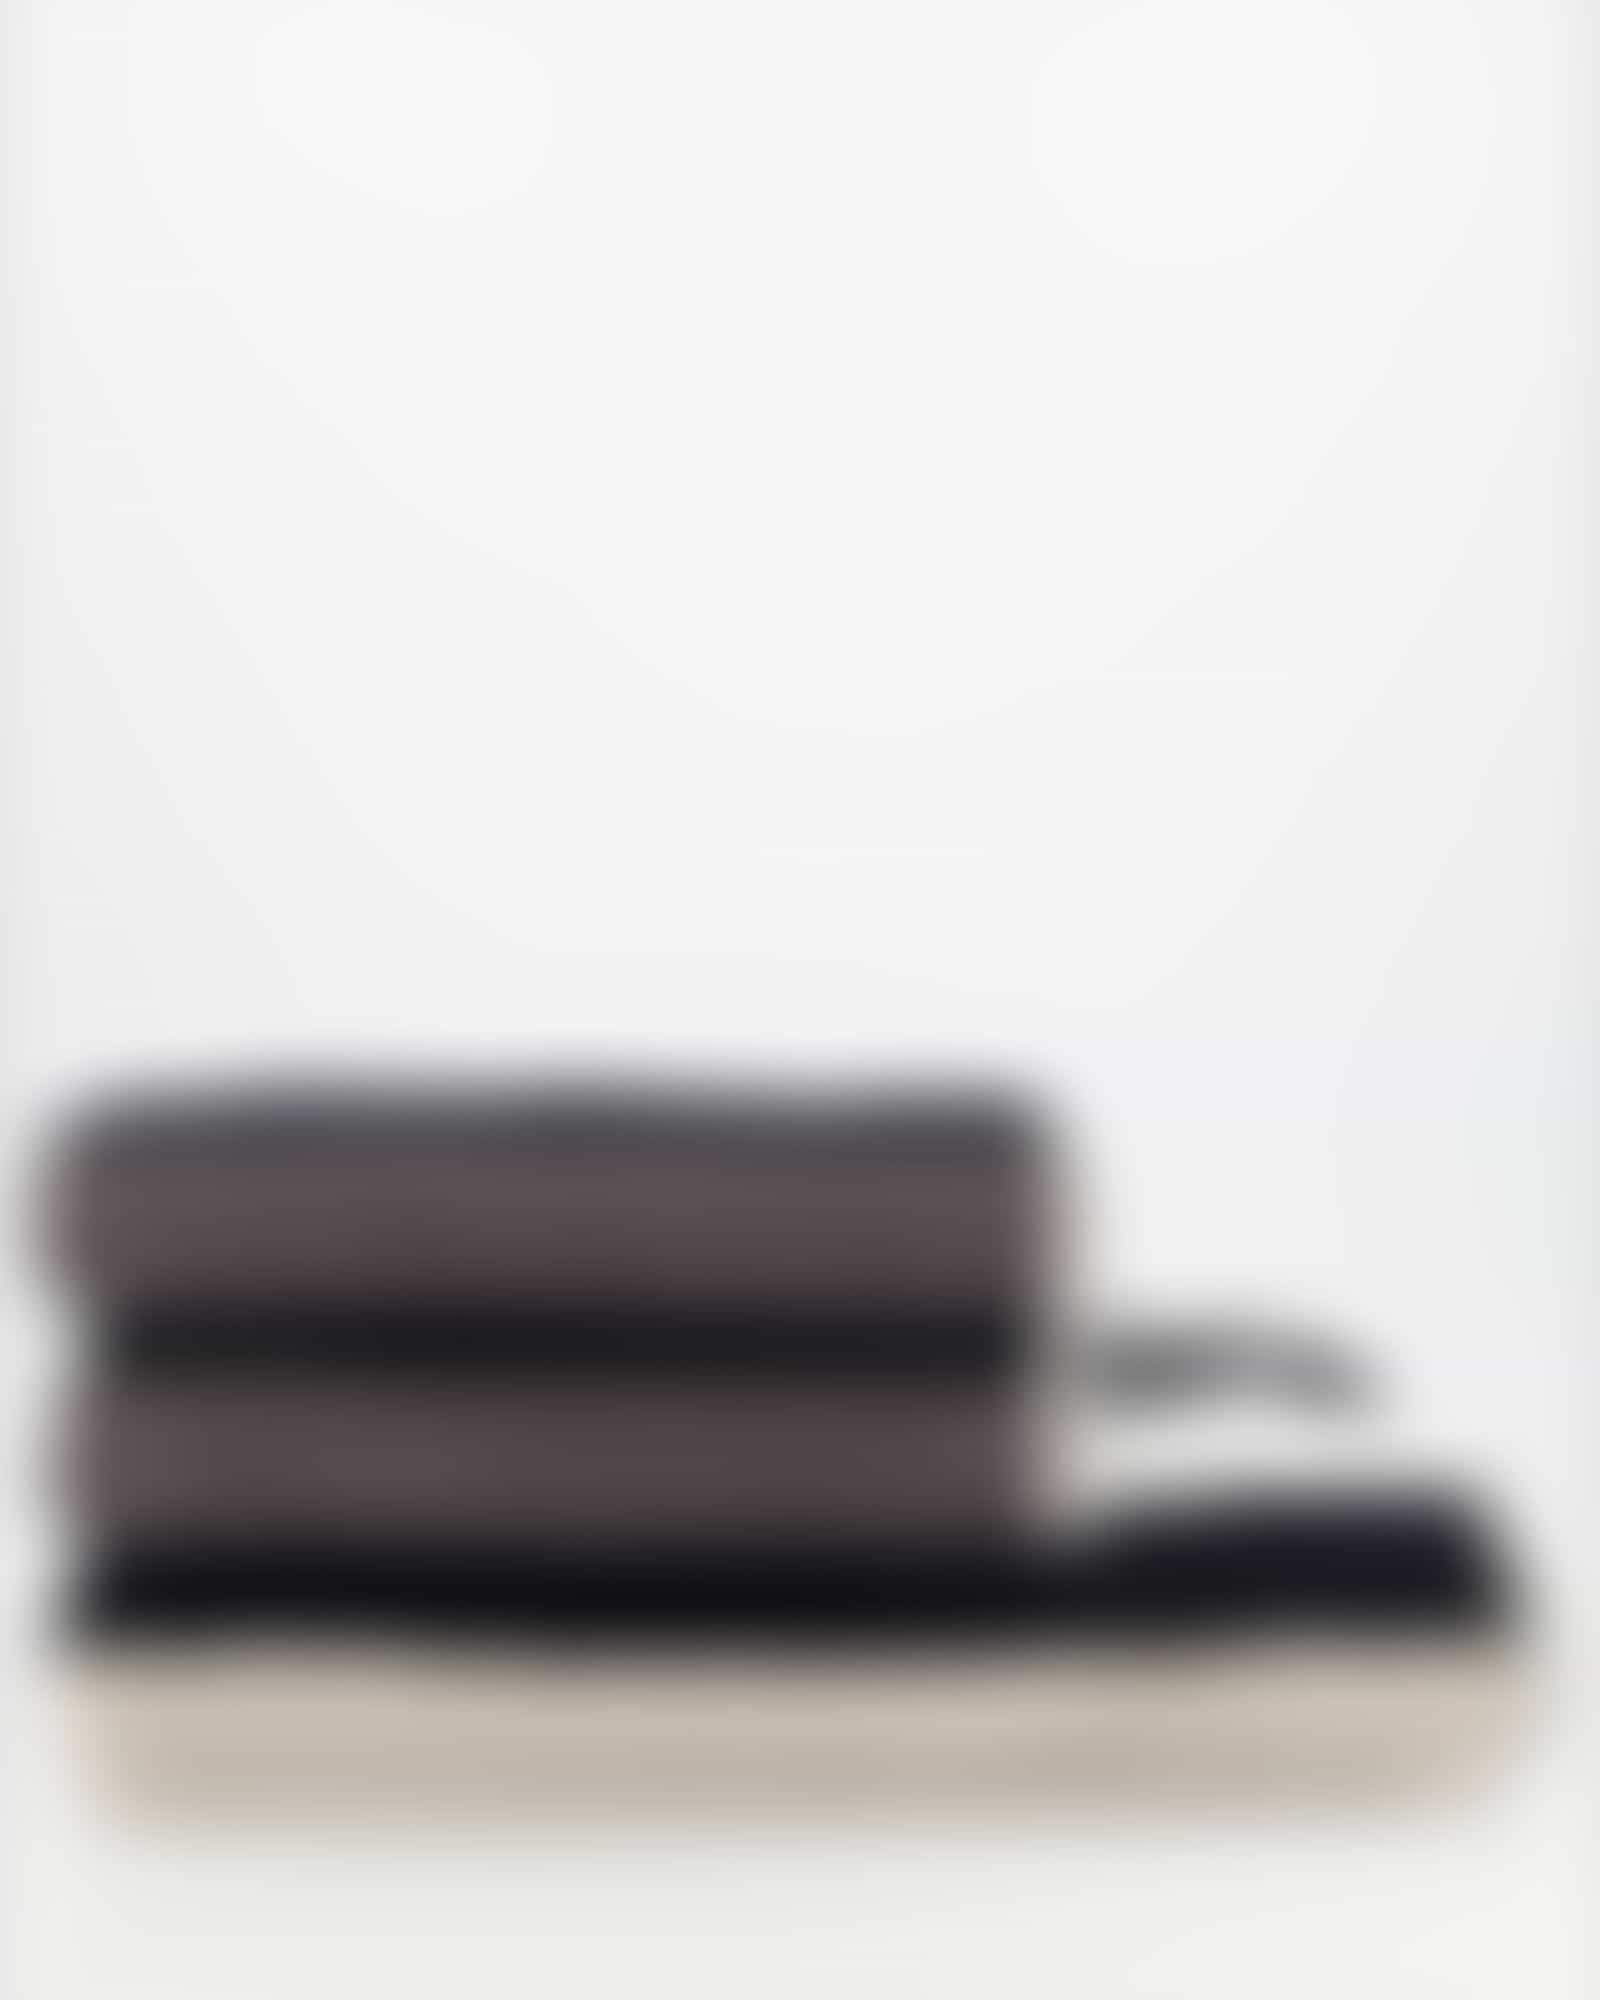 JOOP Tone Streifen 1690 - Farbe: Platin - 77 - Handtuch 50x100 cm